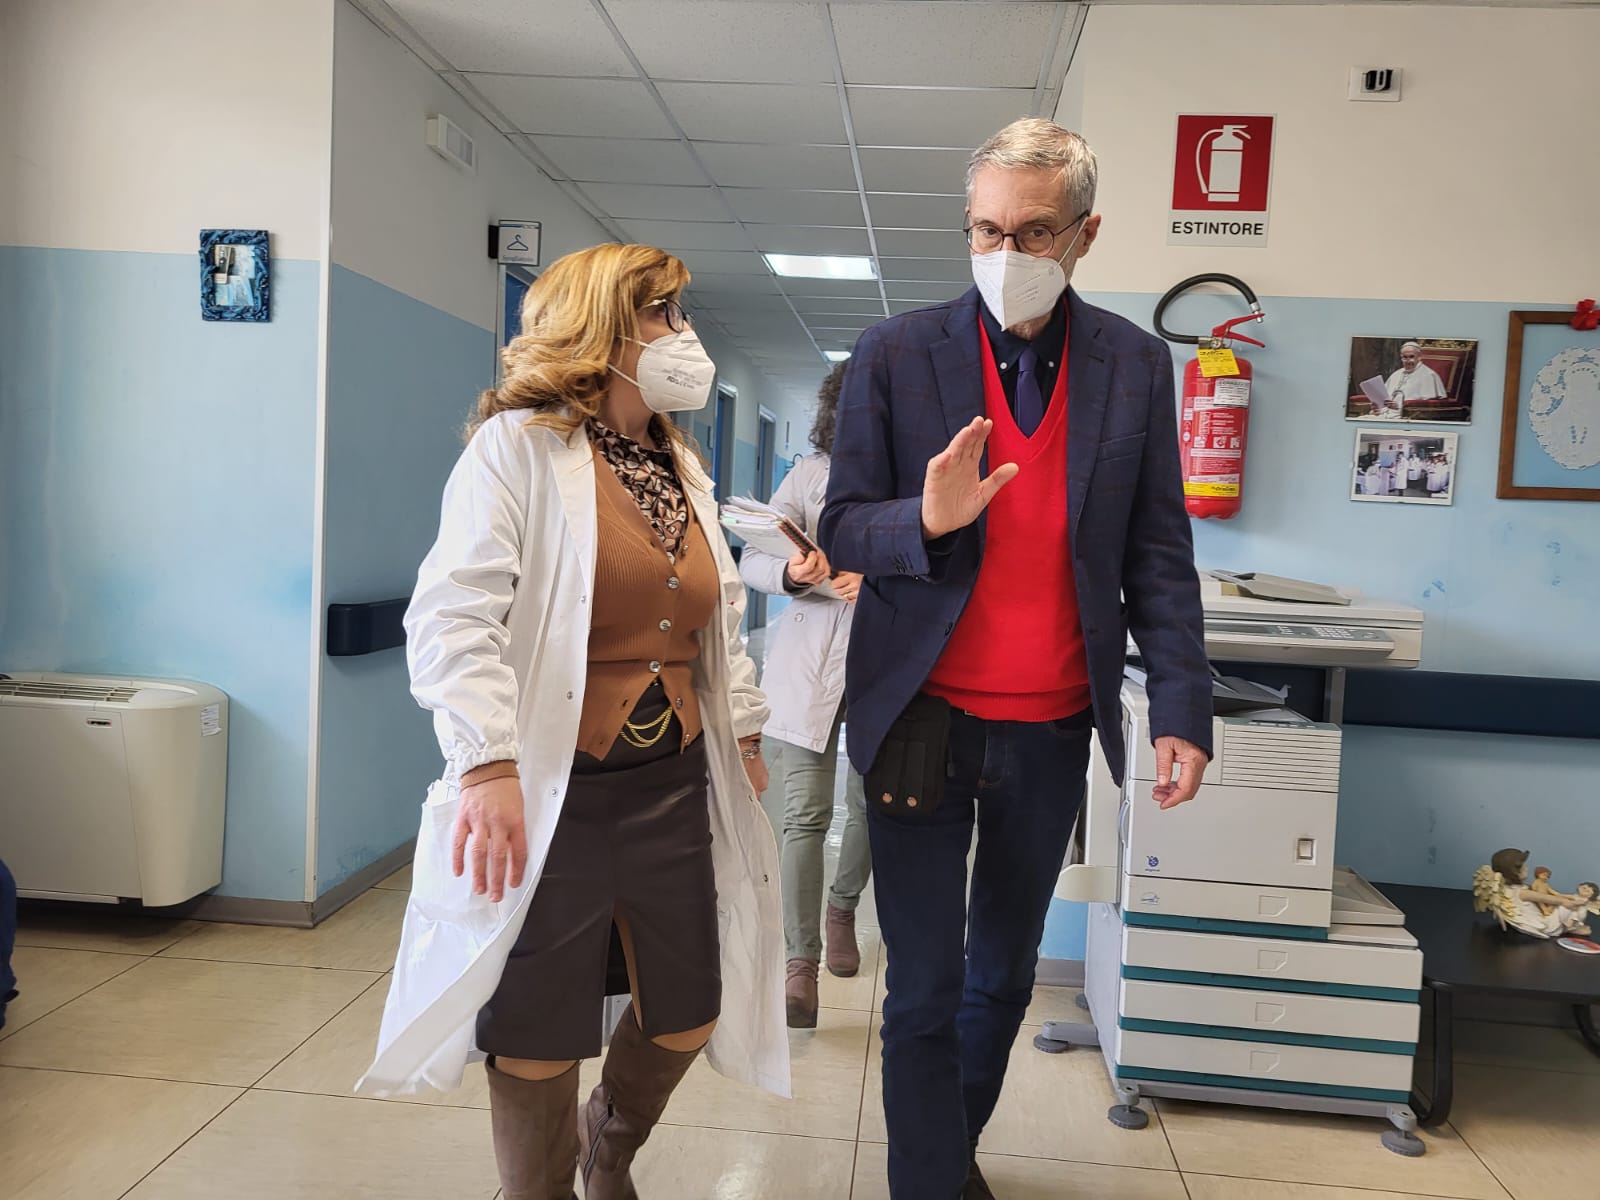 Cassano all’Jonio: il consigliere Laghi in visita all’hospice, serve potenziare strutture territoriali